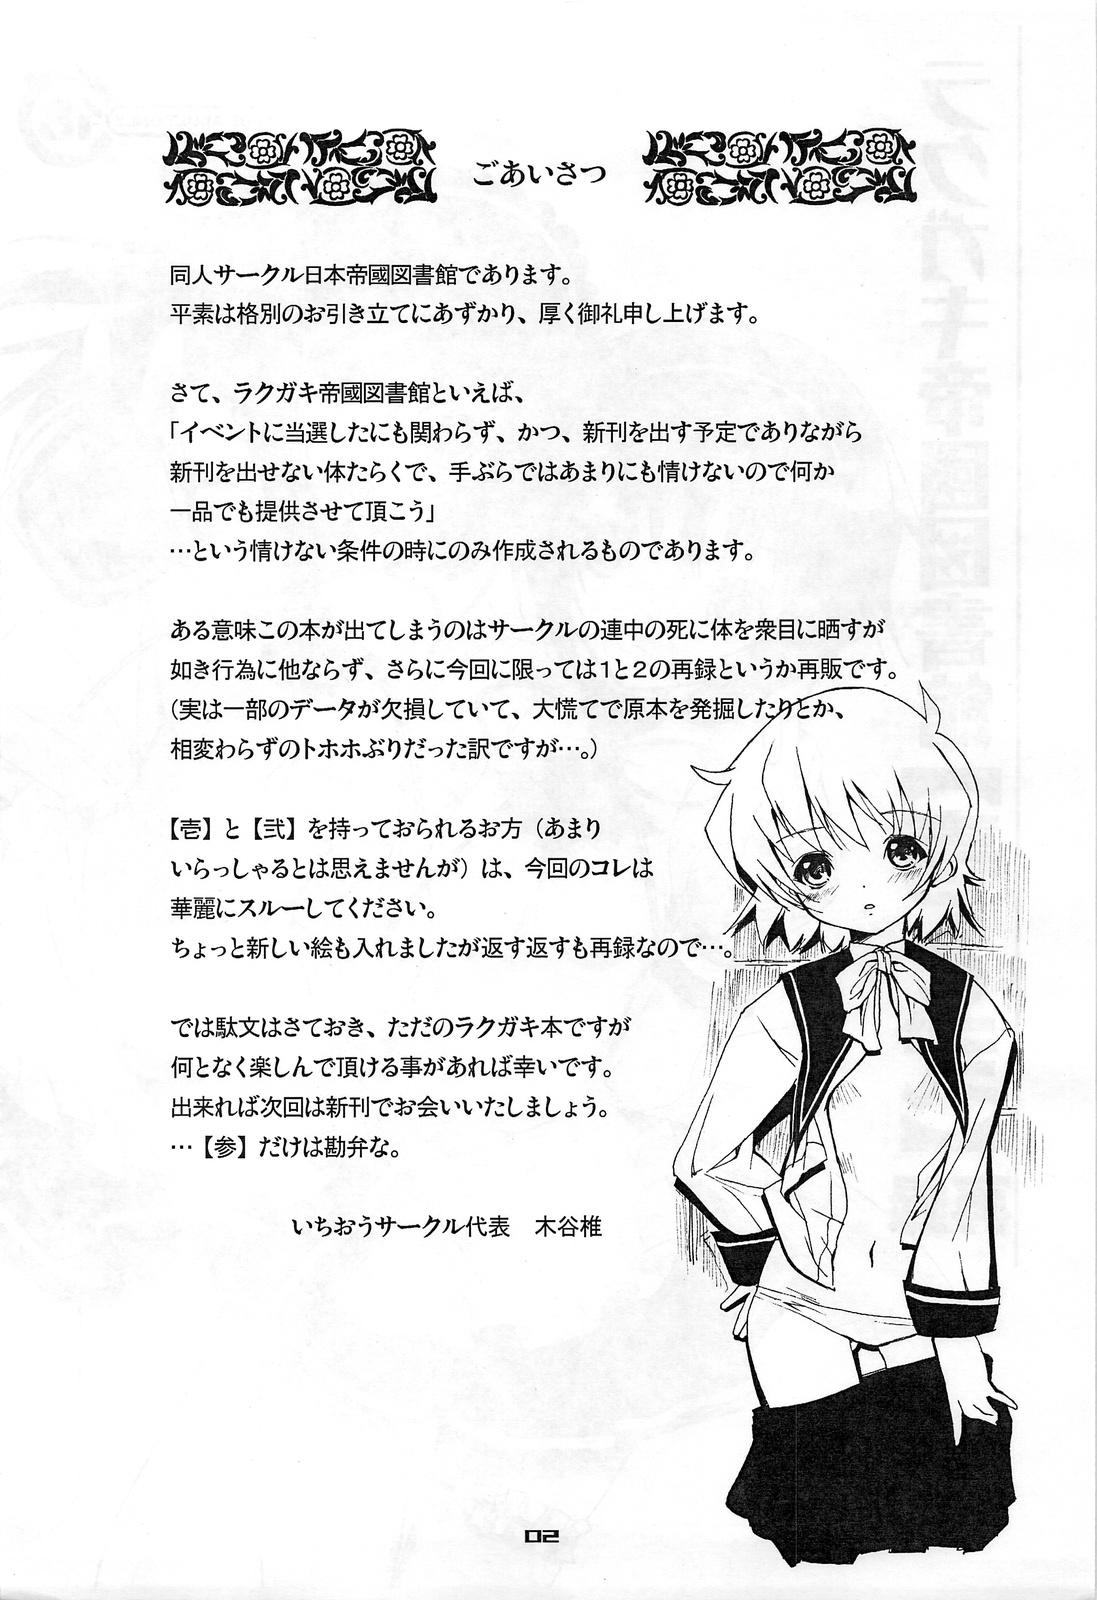 Passionate Rakugaki Teikoku Toshokan "Ichi to Ni" Sairoku Bailando - Page 2